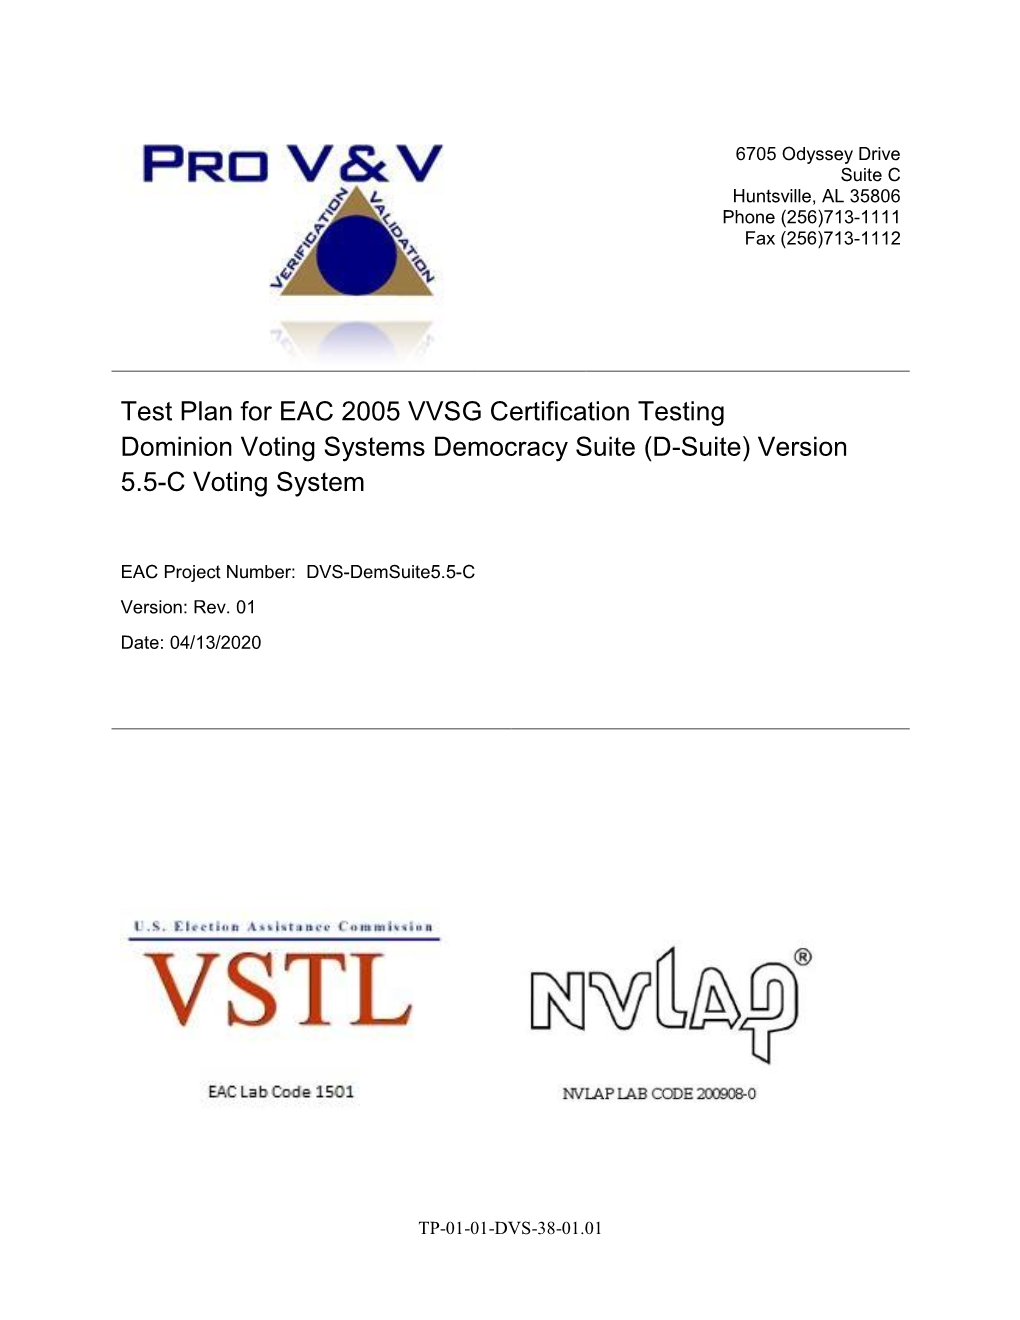 (D-Suite) Version 5.5-C Voting System